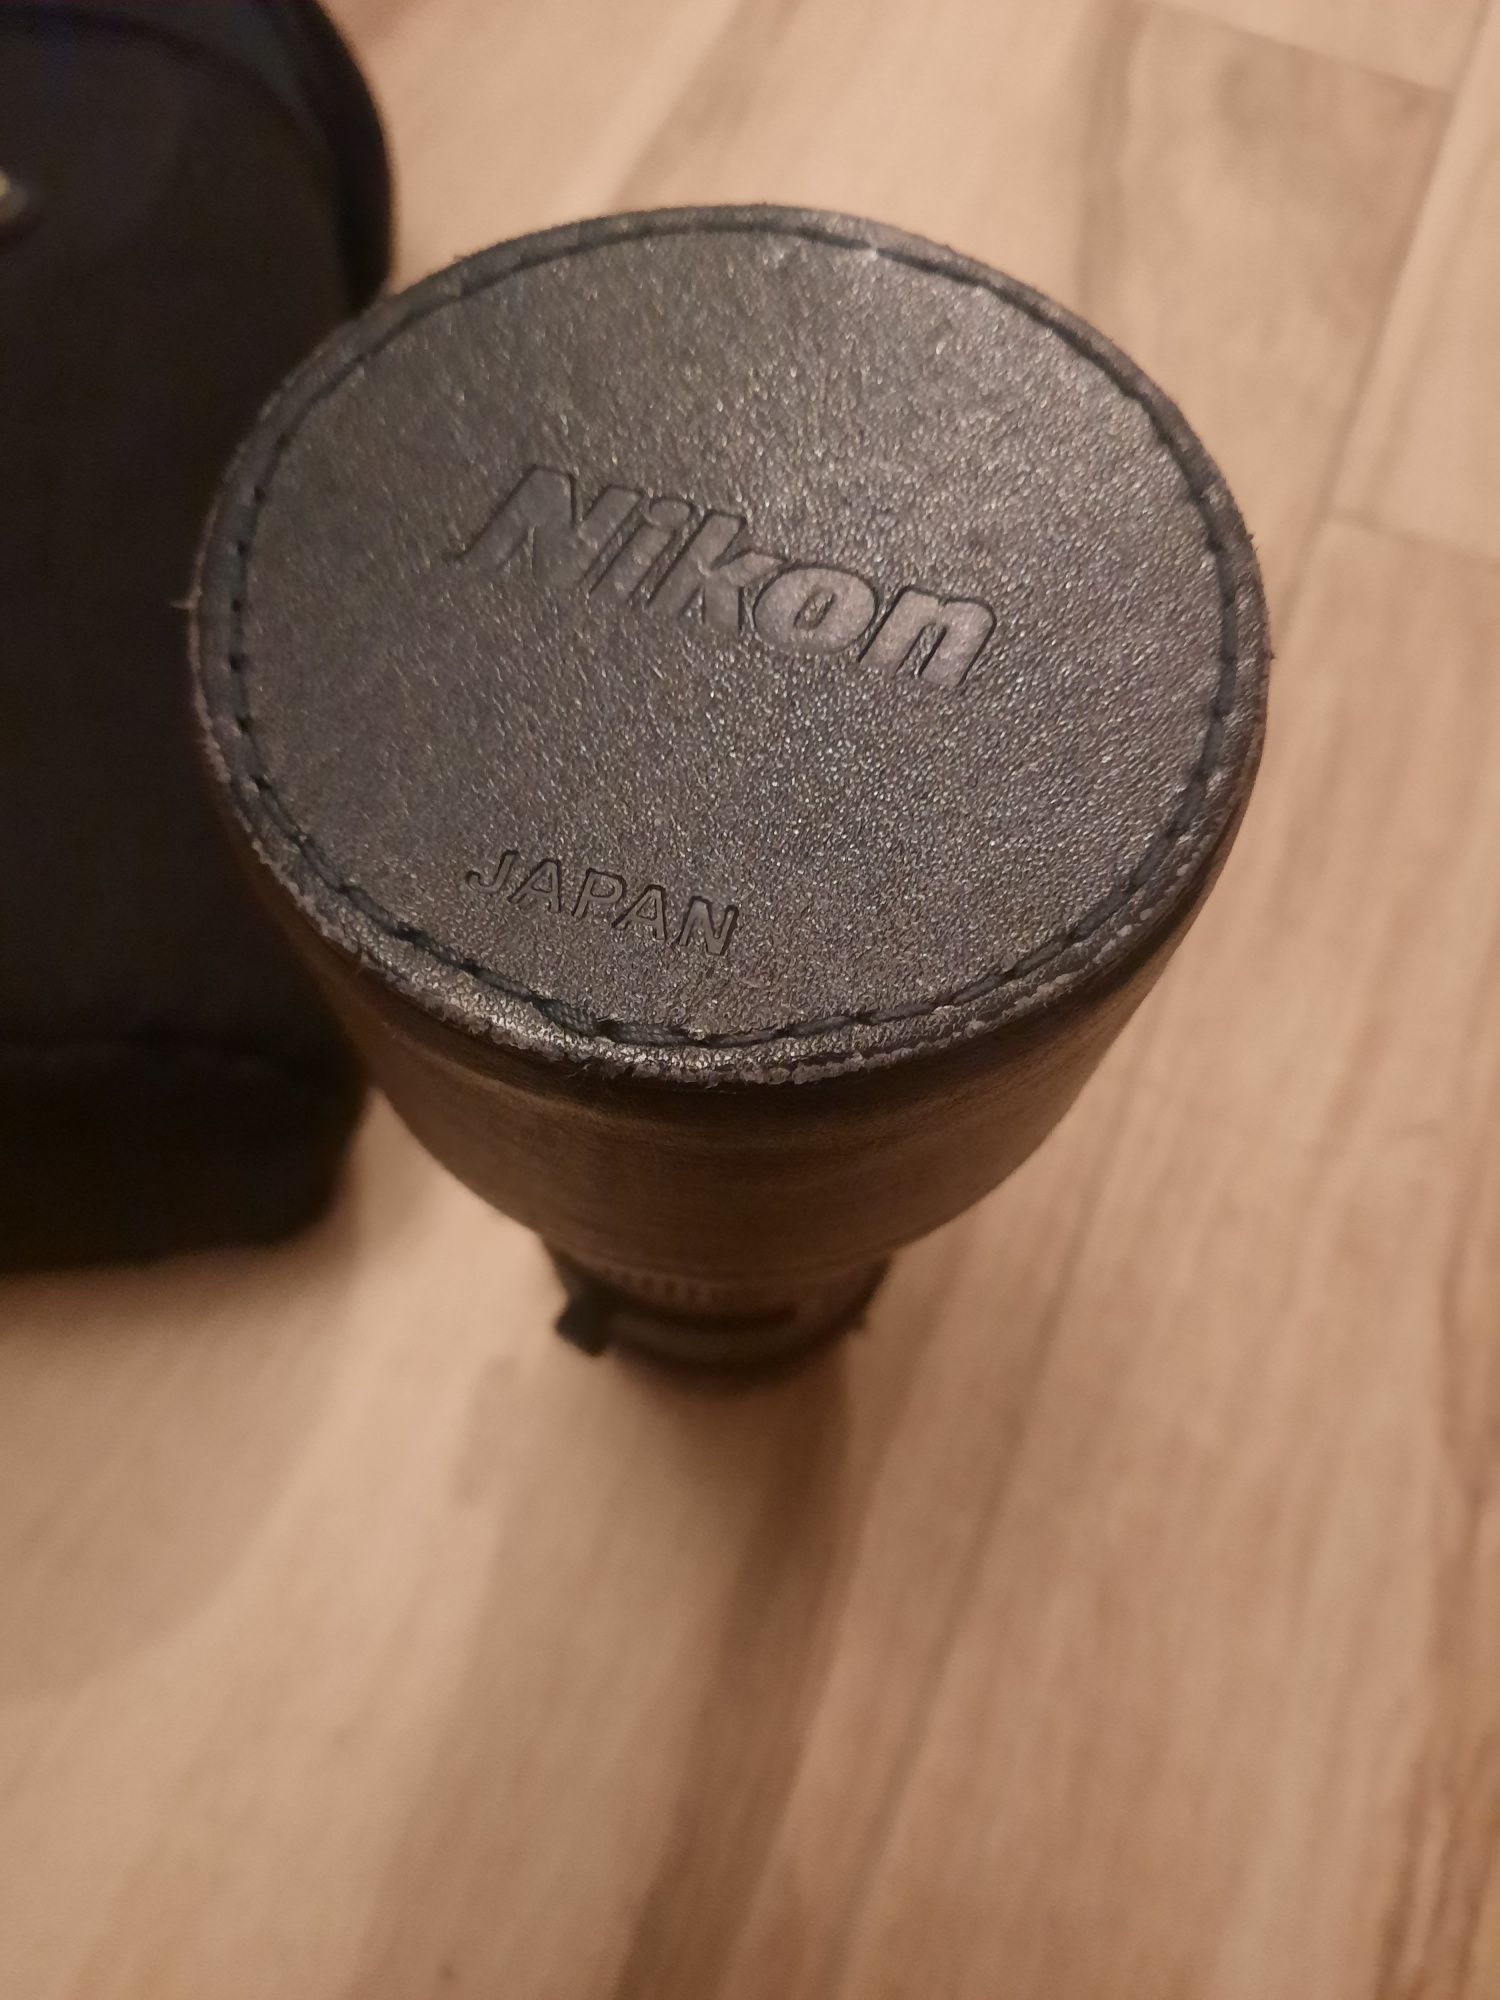 Nikon 300mm f4 af